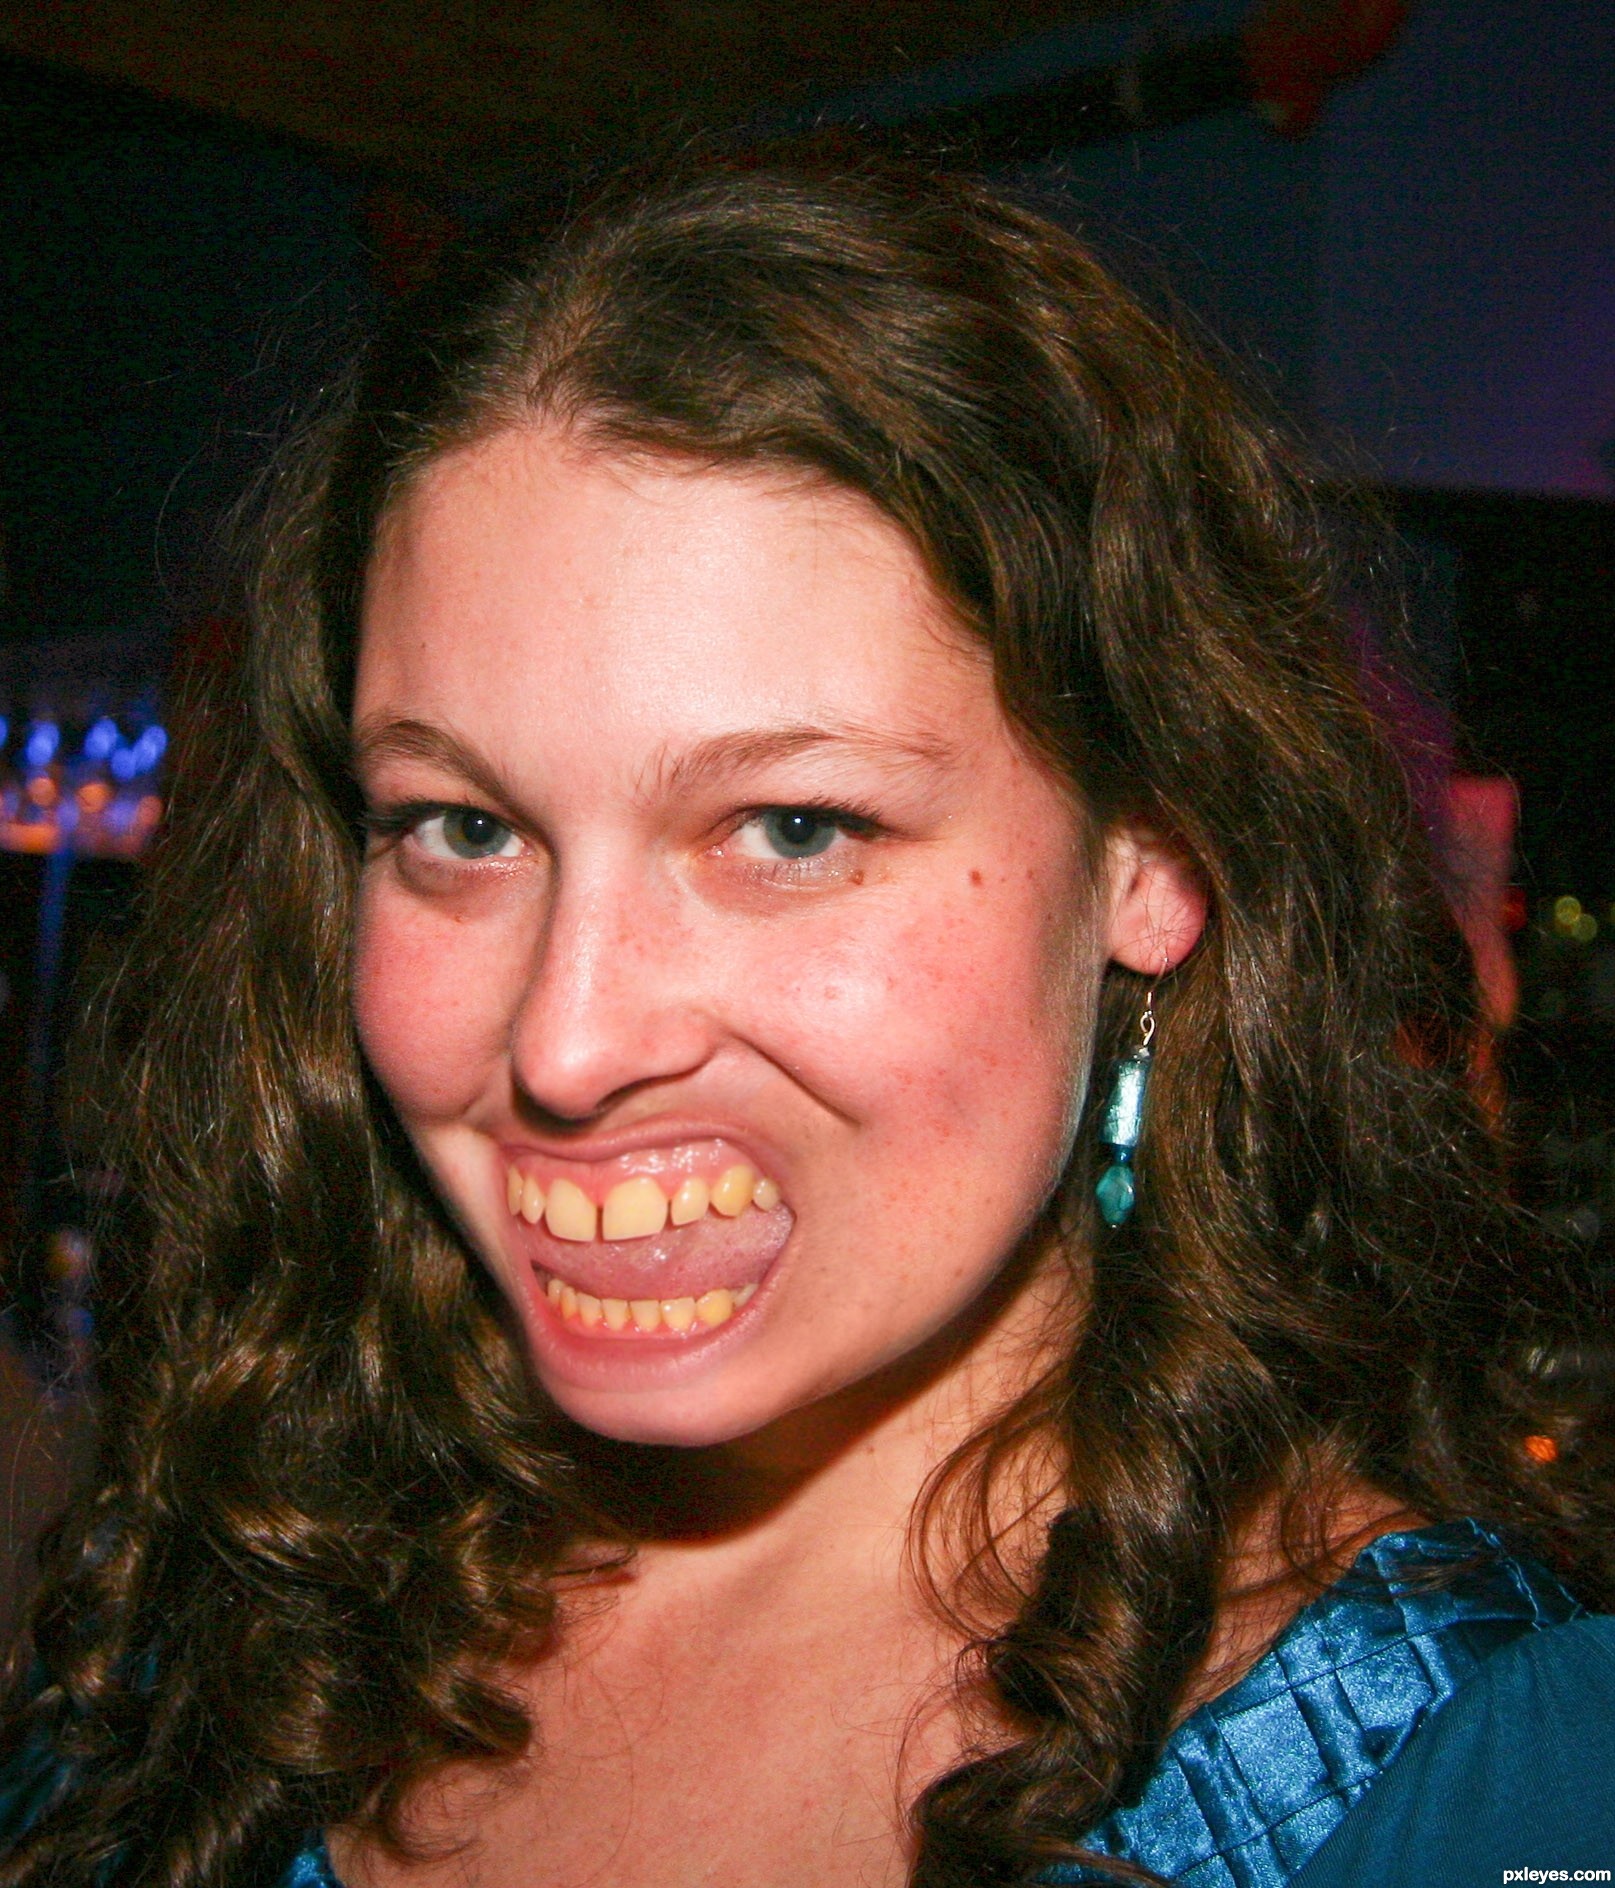 Девушка с большими зубами